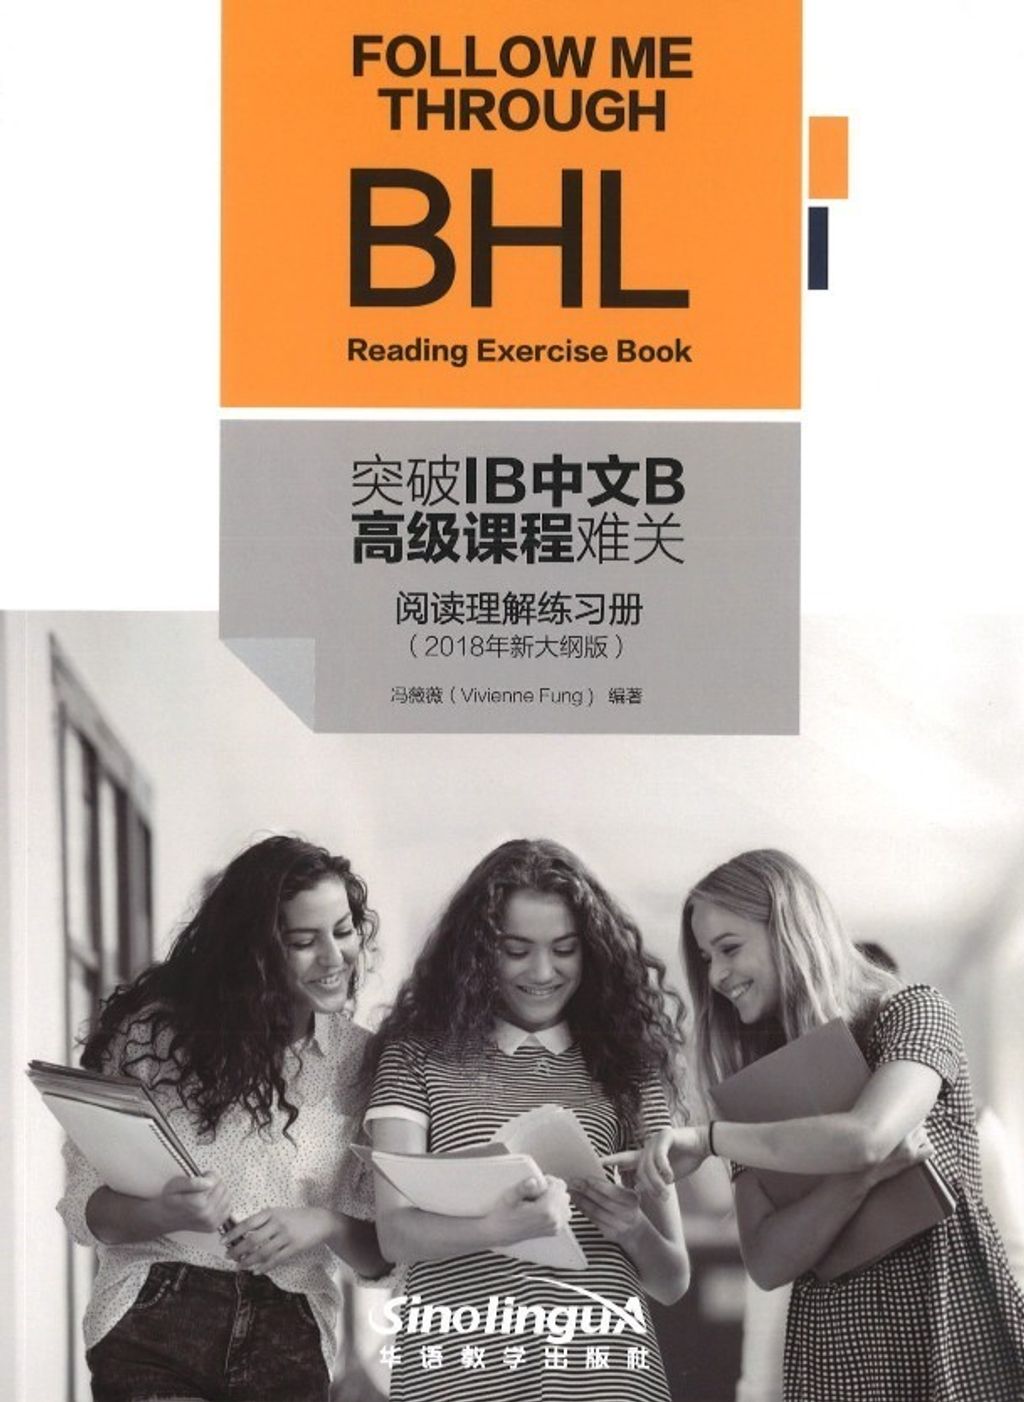 突破 IB 中文 B 高级课程难关-- 阅读理解练习册.jpg